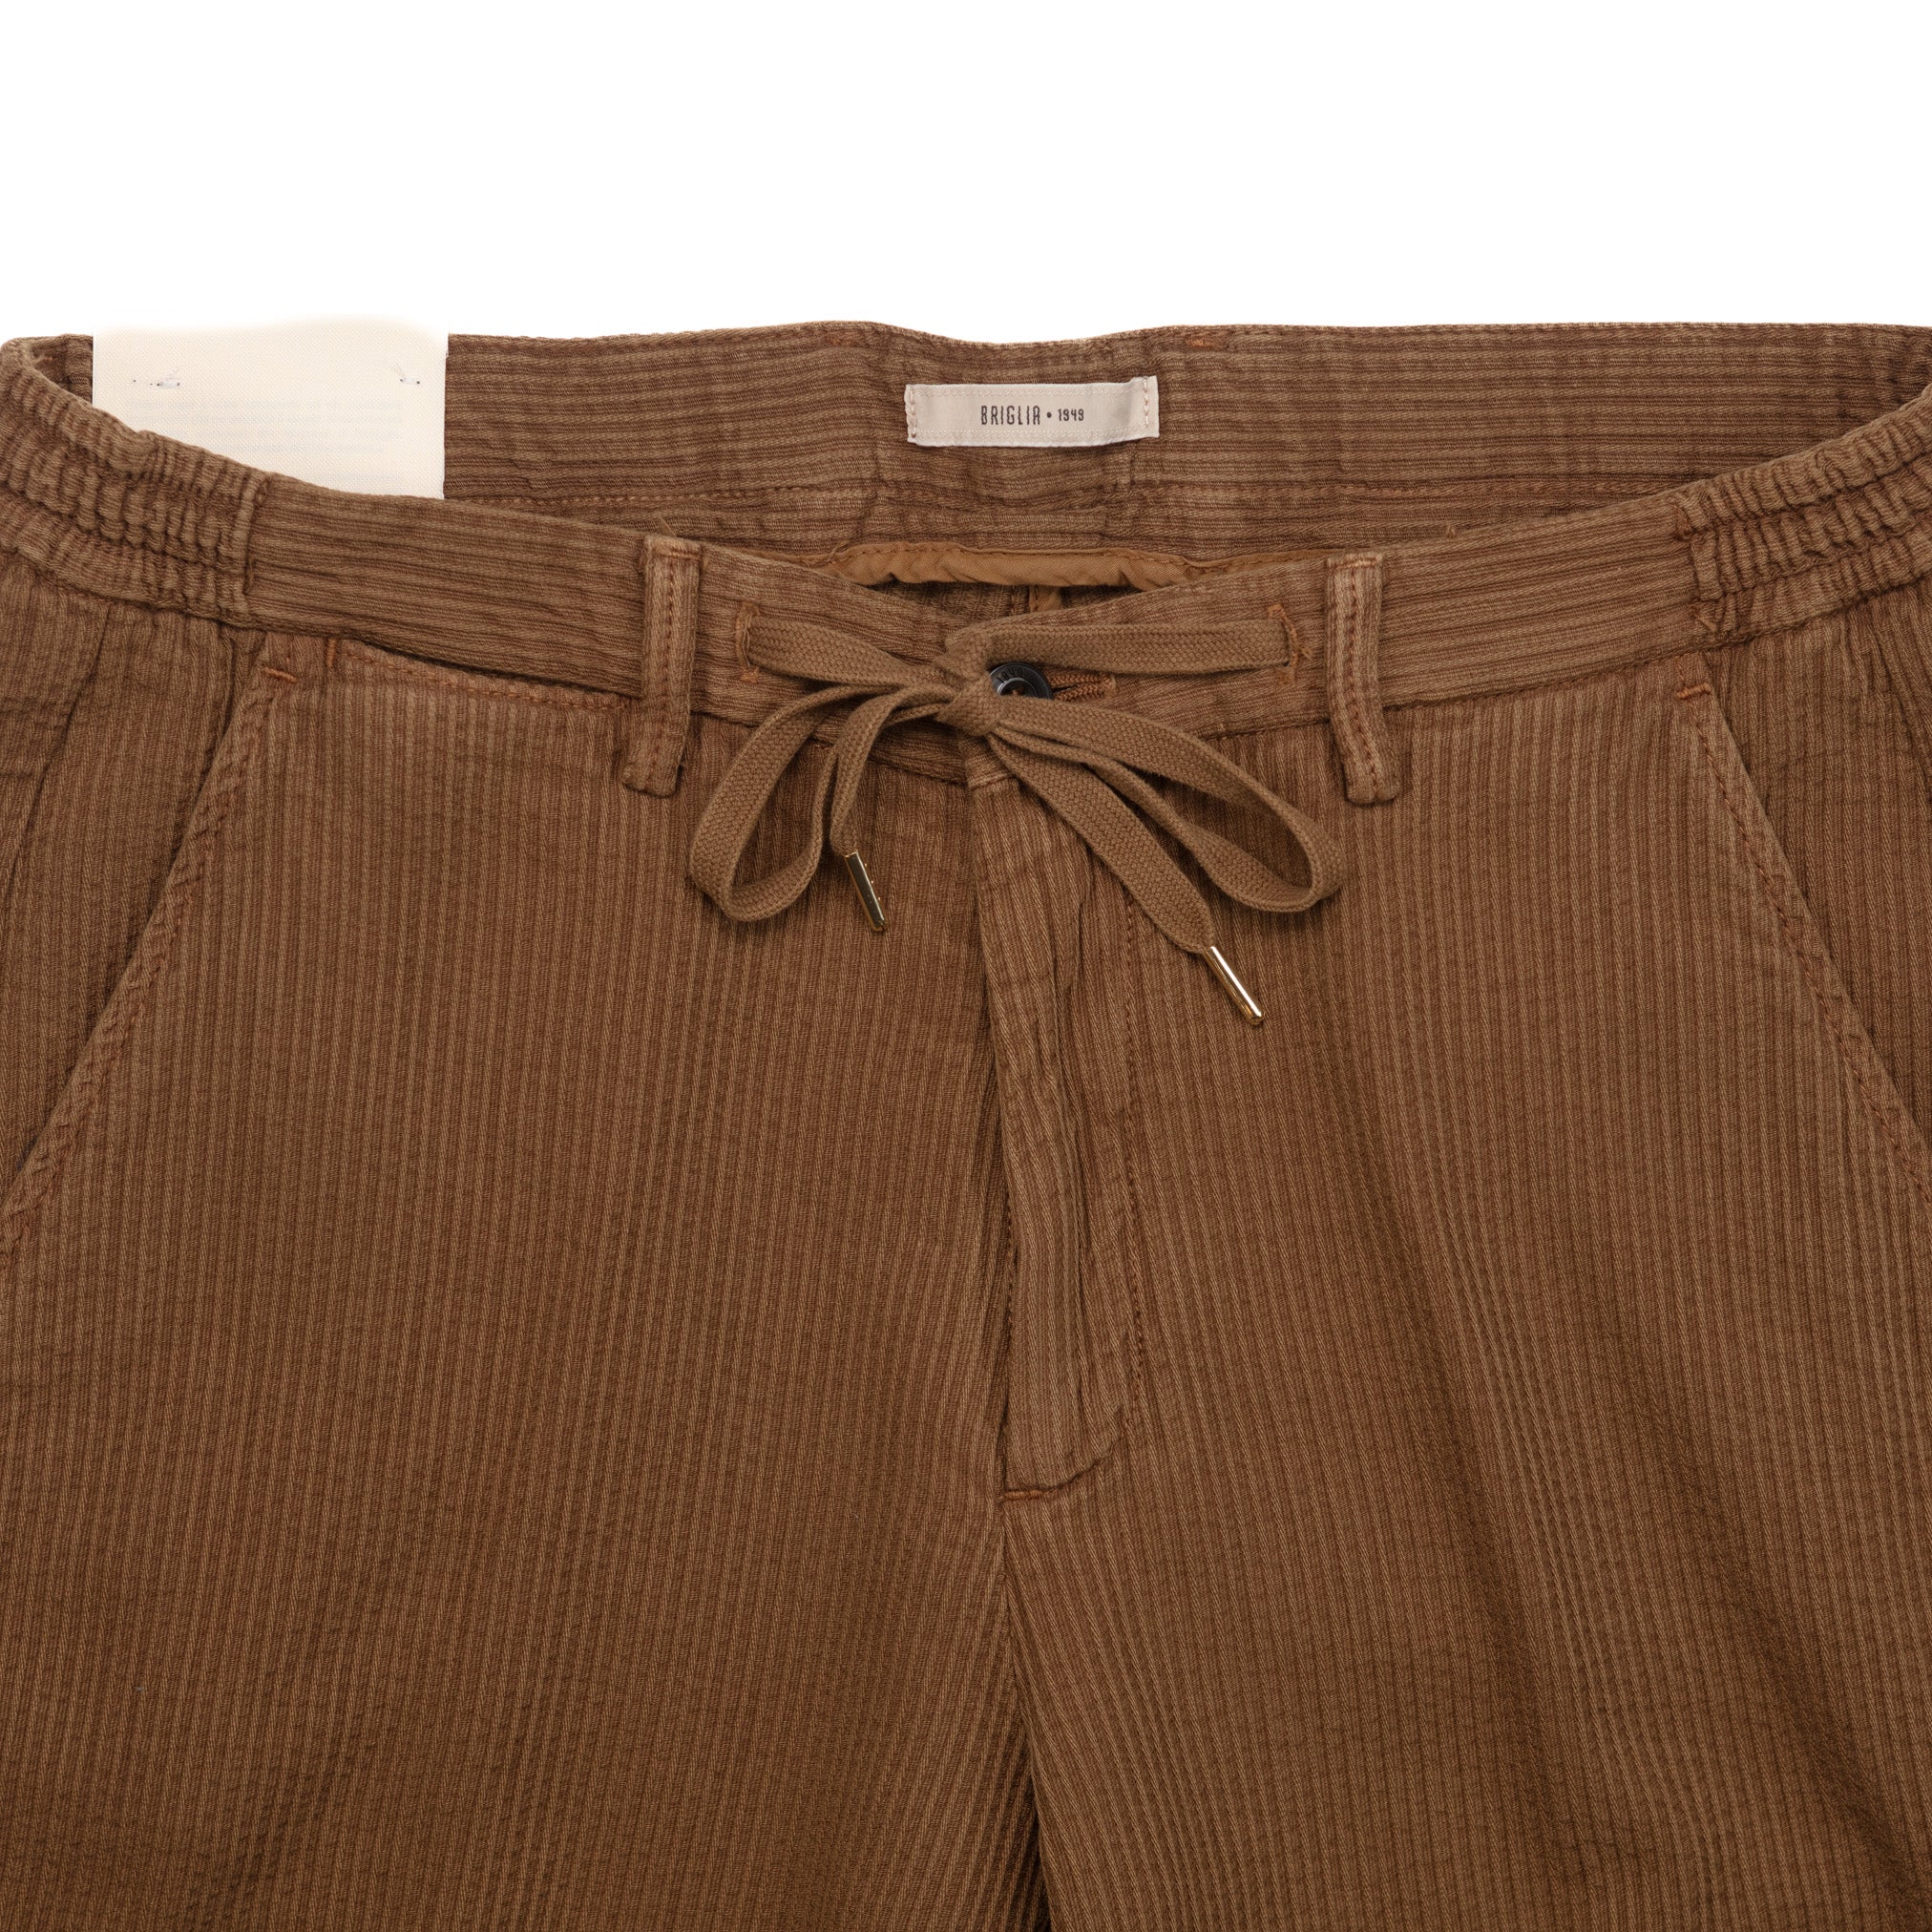 Malibu Shorts in Hazelnut